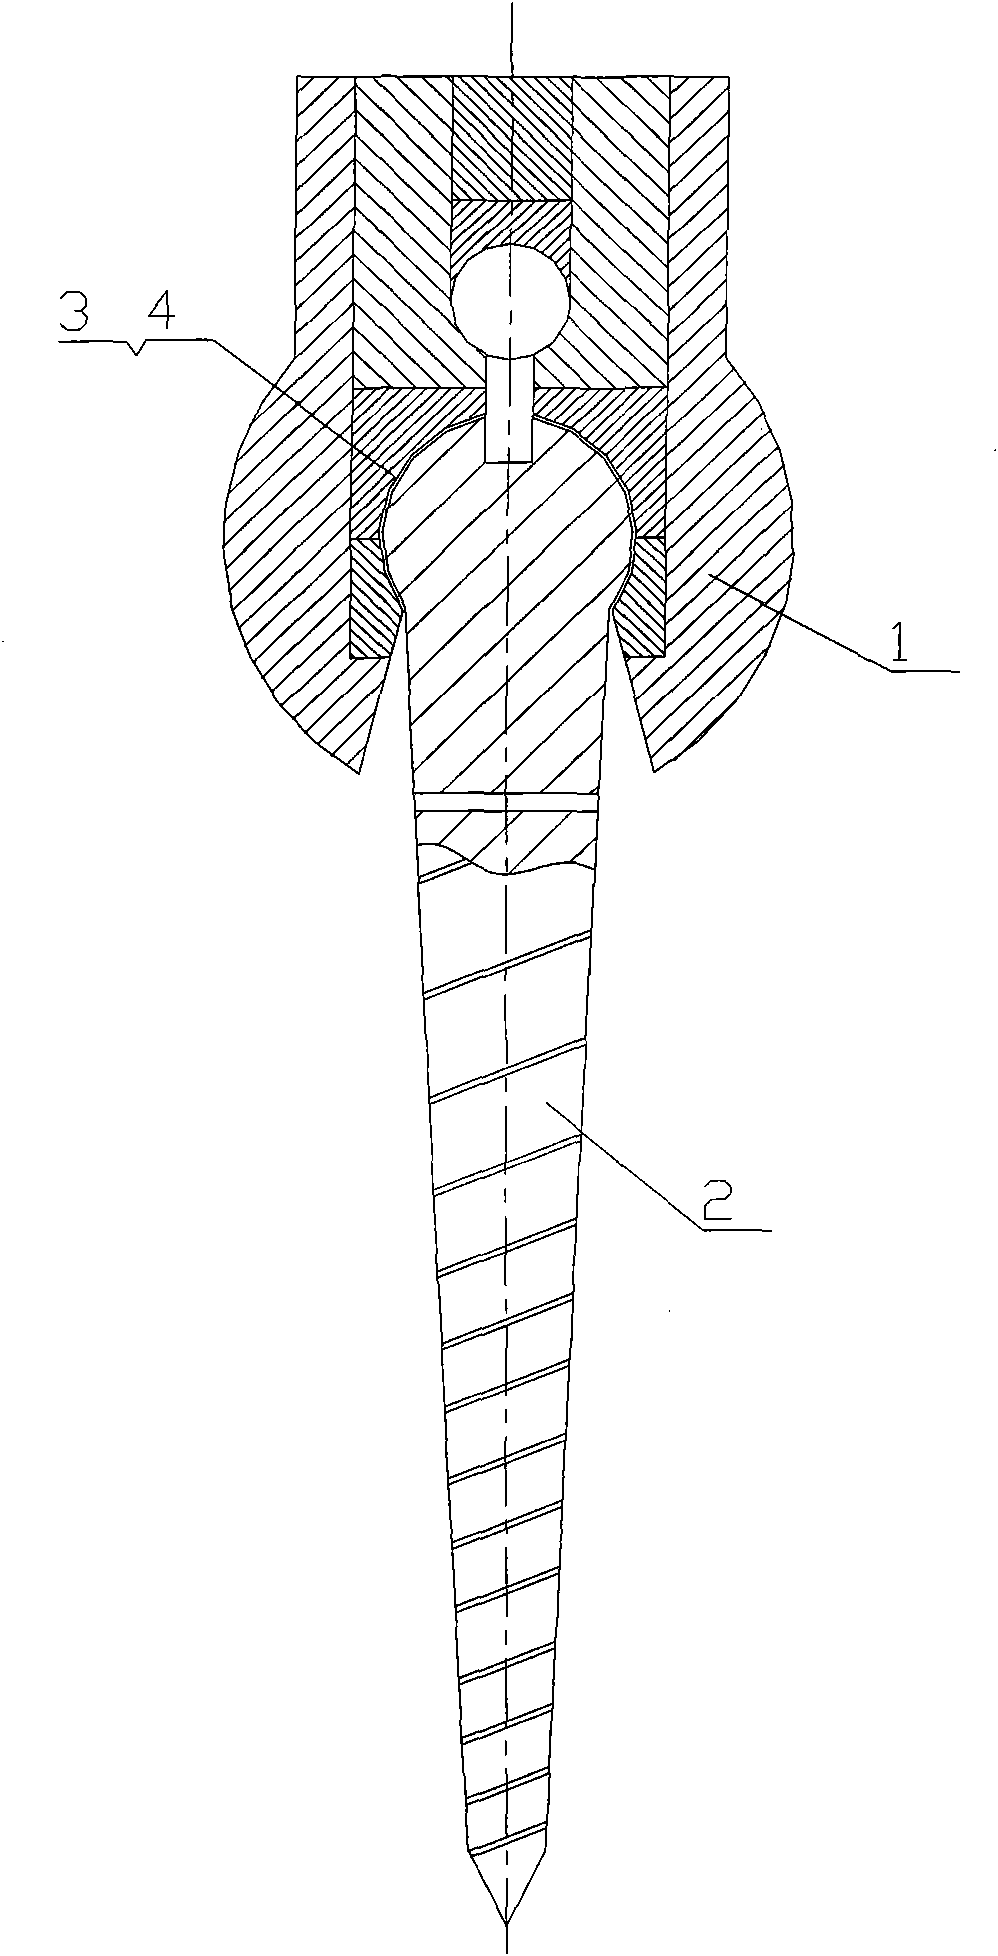 Vertebral pedicle screw